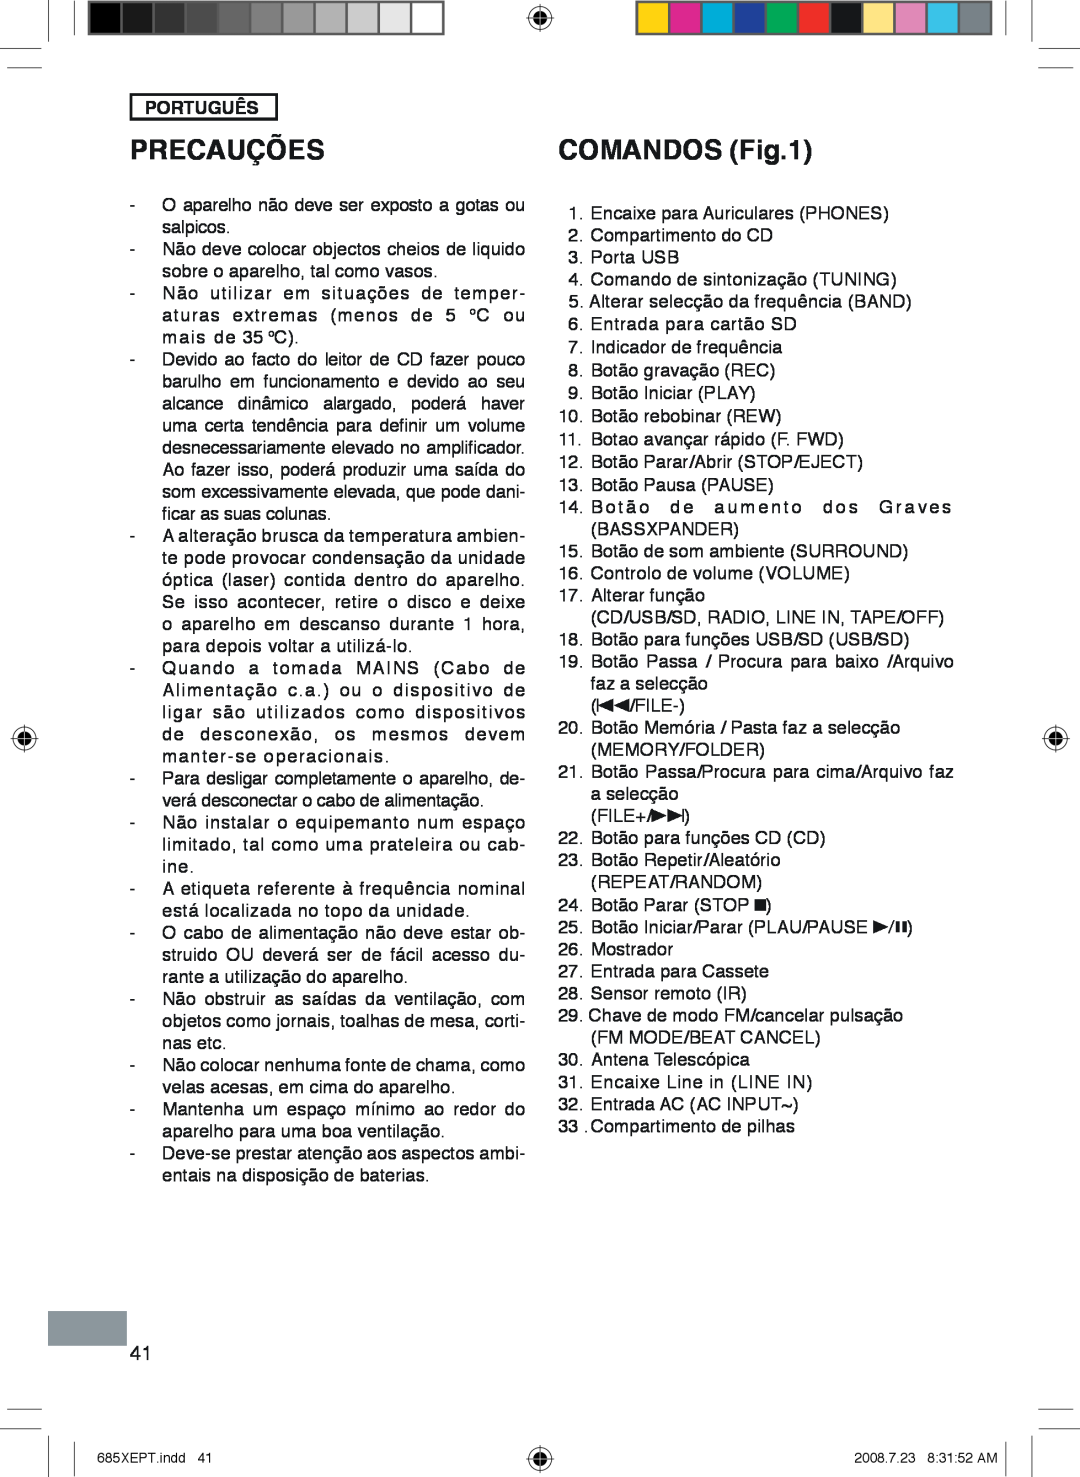 Sanyo MCD-UB685M instruction manual Precauções, Comandos, Português 